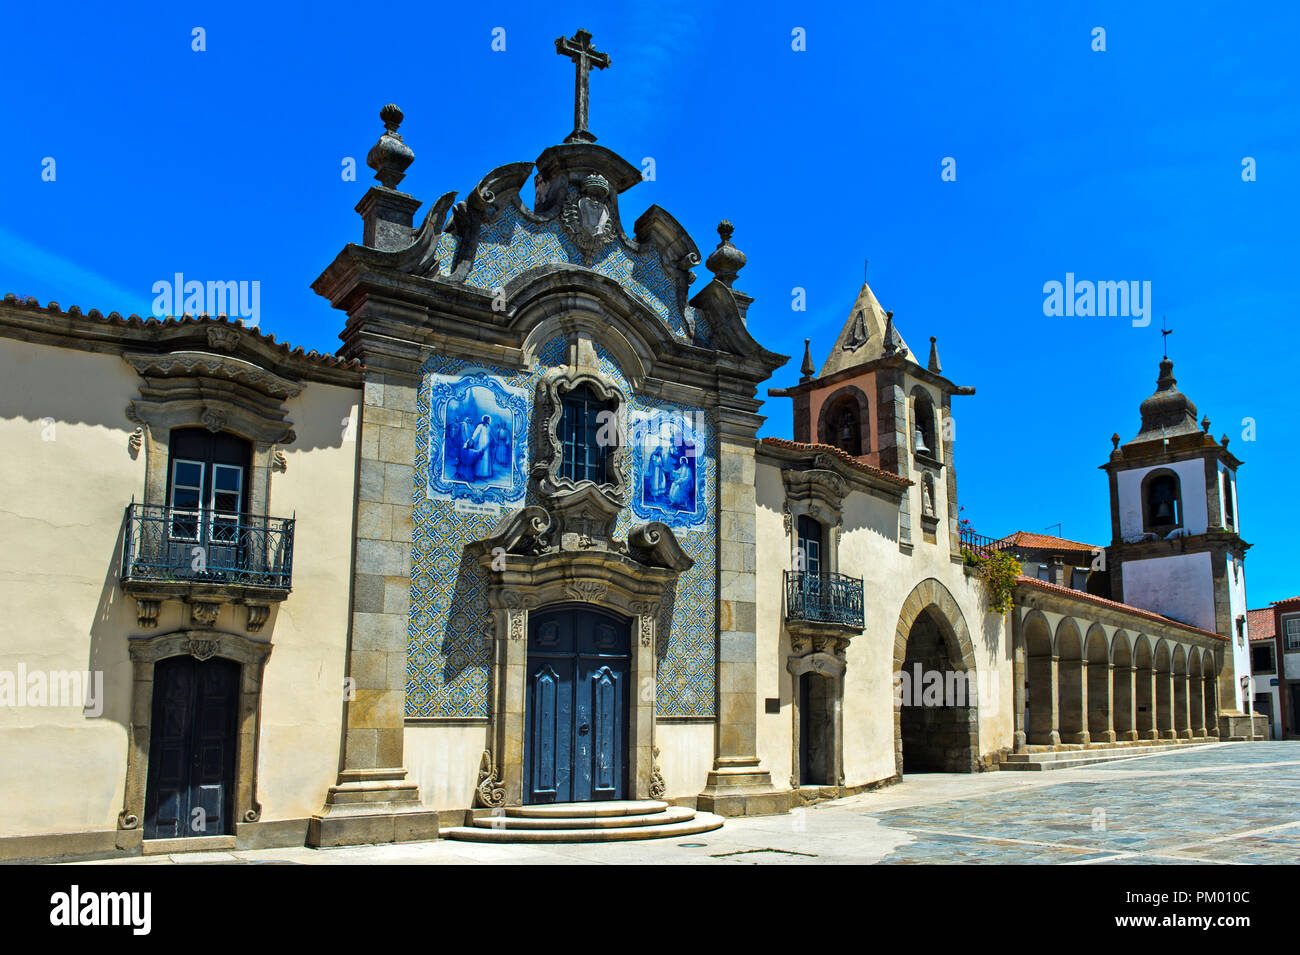 Capilla de la misericordia, Capela da Misericórdia, Sao Joao da Pesqueira, Portugal Foto de stock